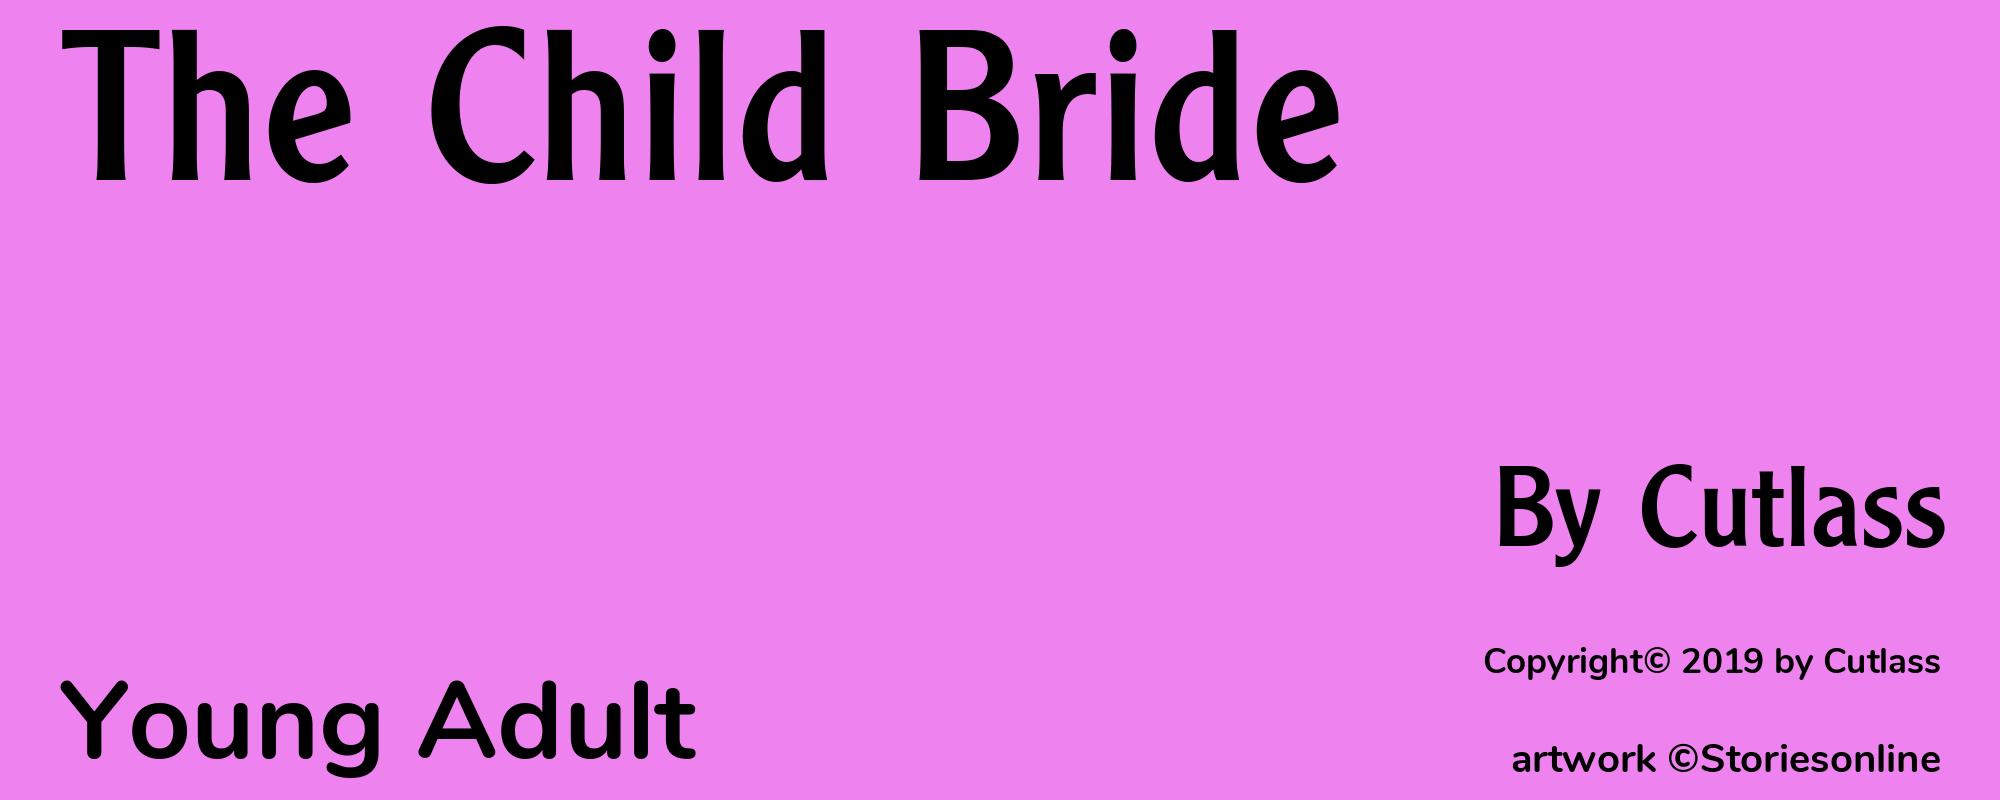 The Child Bride - Cover